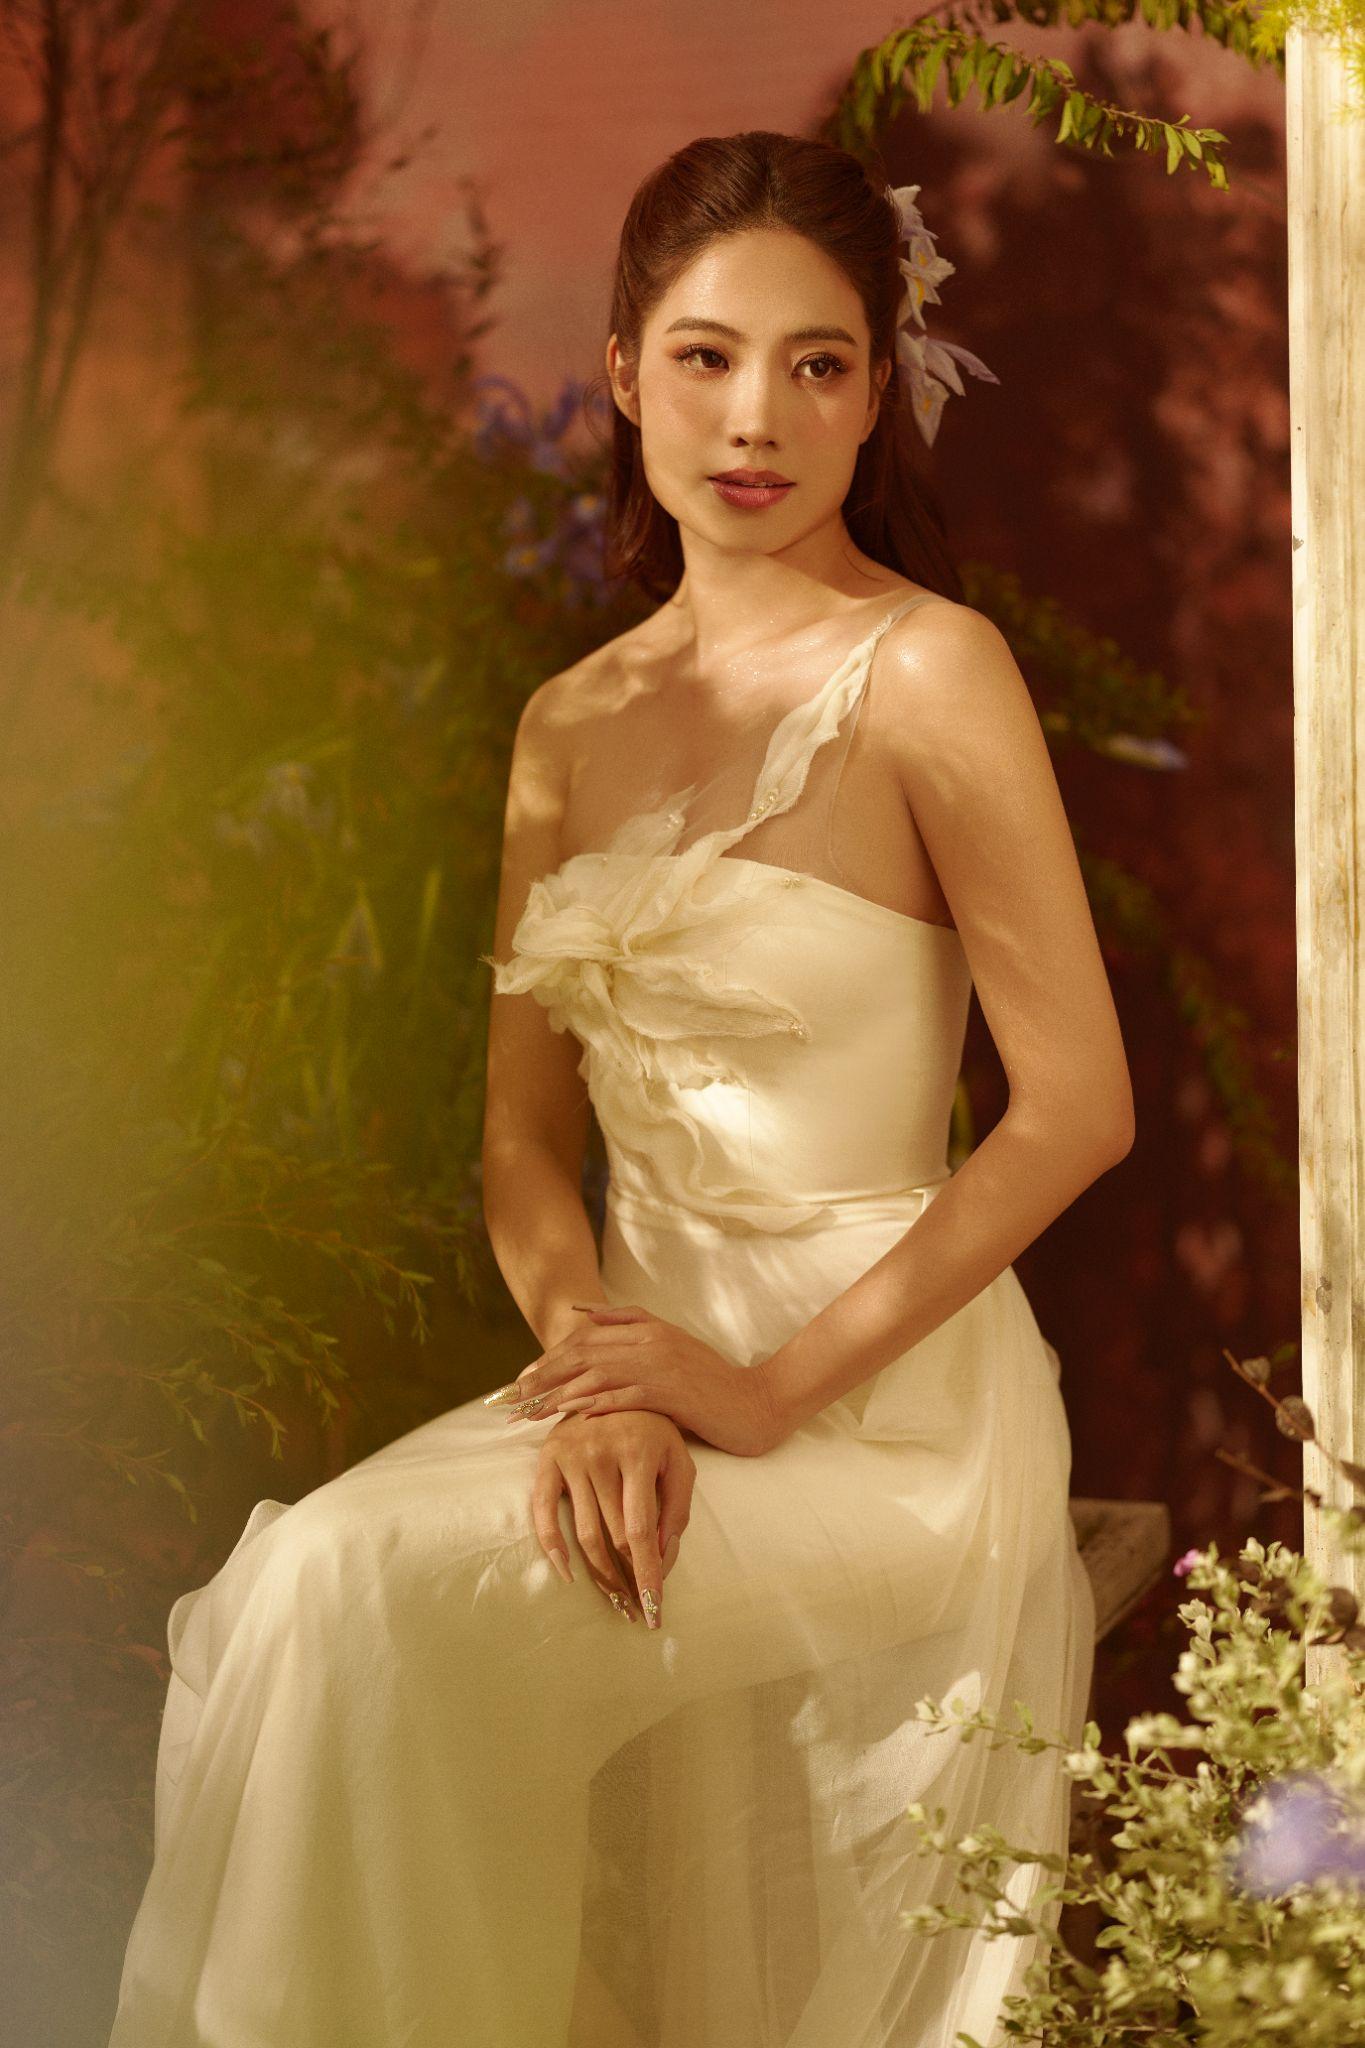 Hoa hậu Biển, MC Ninh Hoàng Ngân đẹp ngọt ngào trong thiết kế đầm phủ tơ trắng, kết hoa tỉ mỉ sang trọng. Vẻ đẹp “nàng thơ” vô cùng phù hợp với hình tượng Thalia - Nữ thần chủ trì hài kịch và thơ ca.